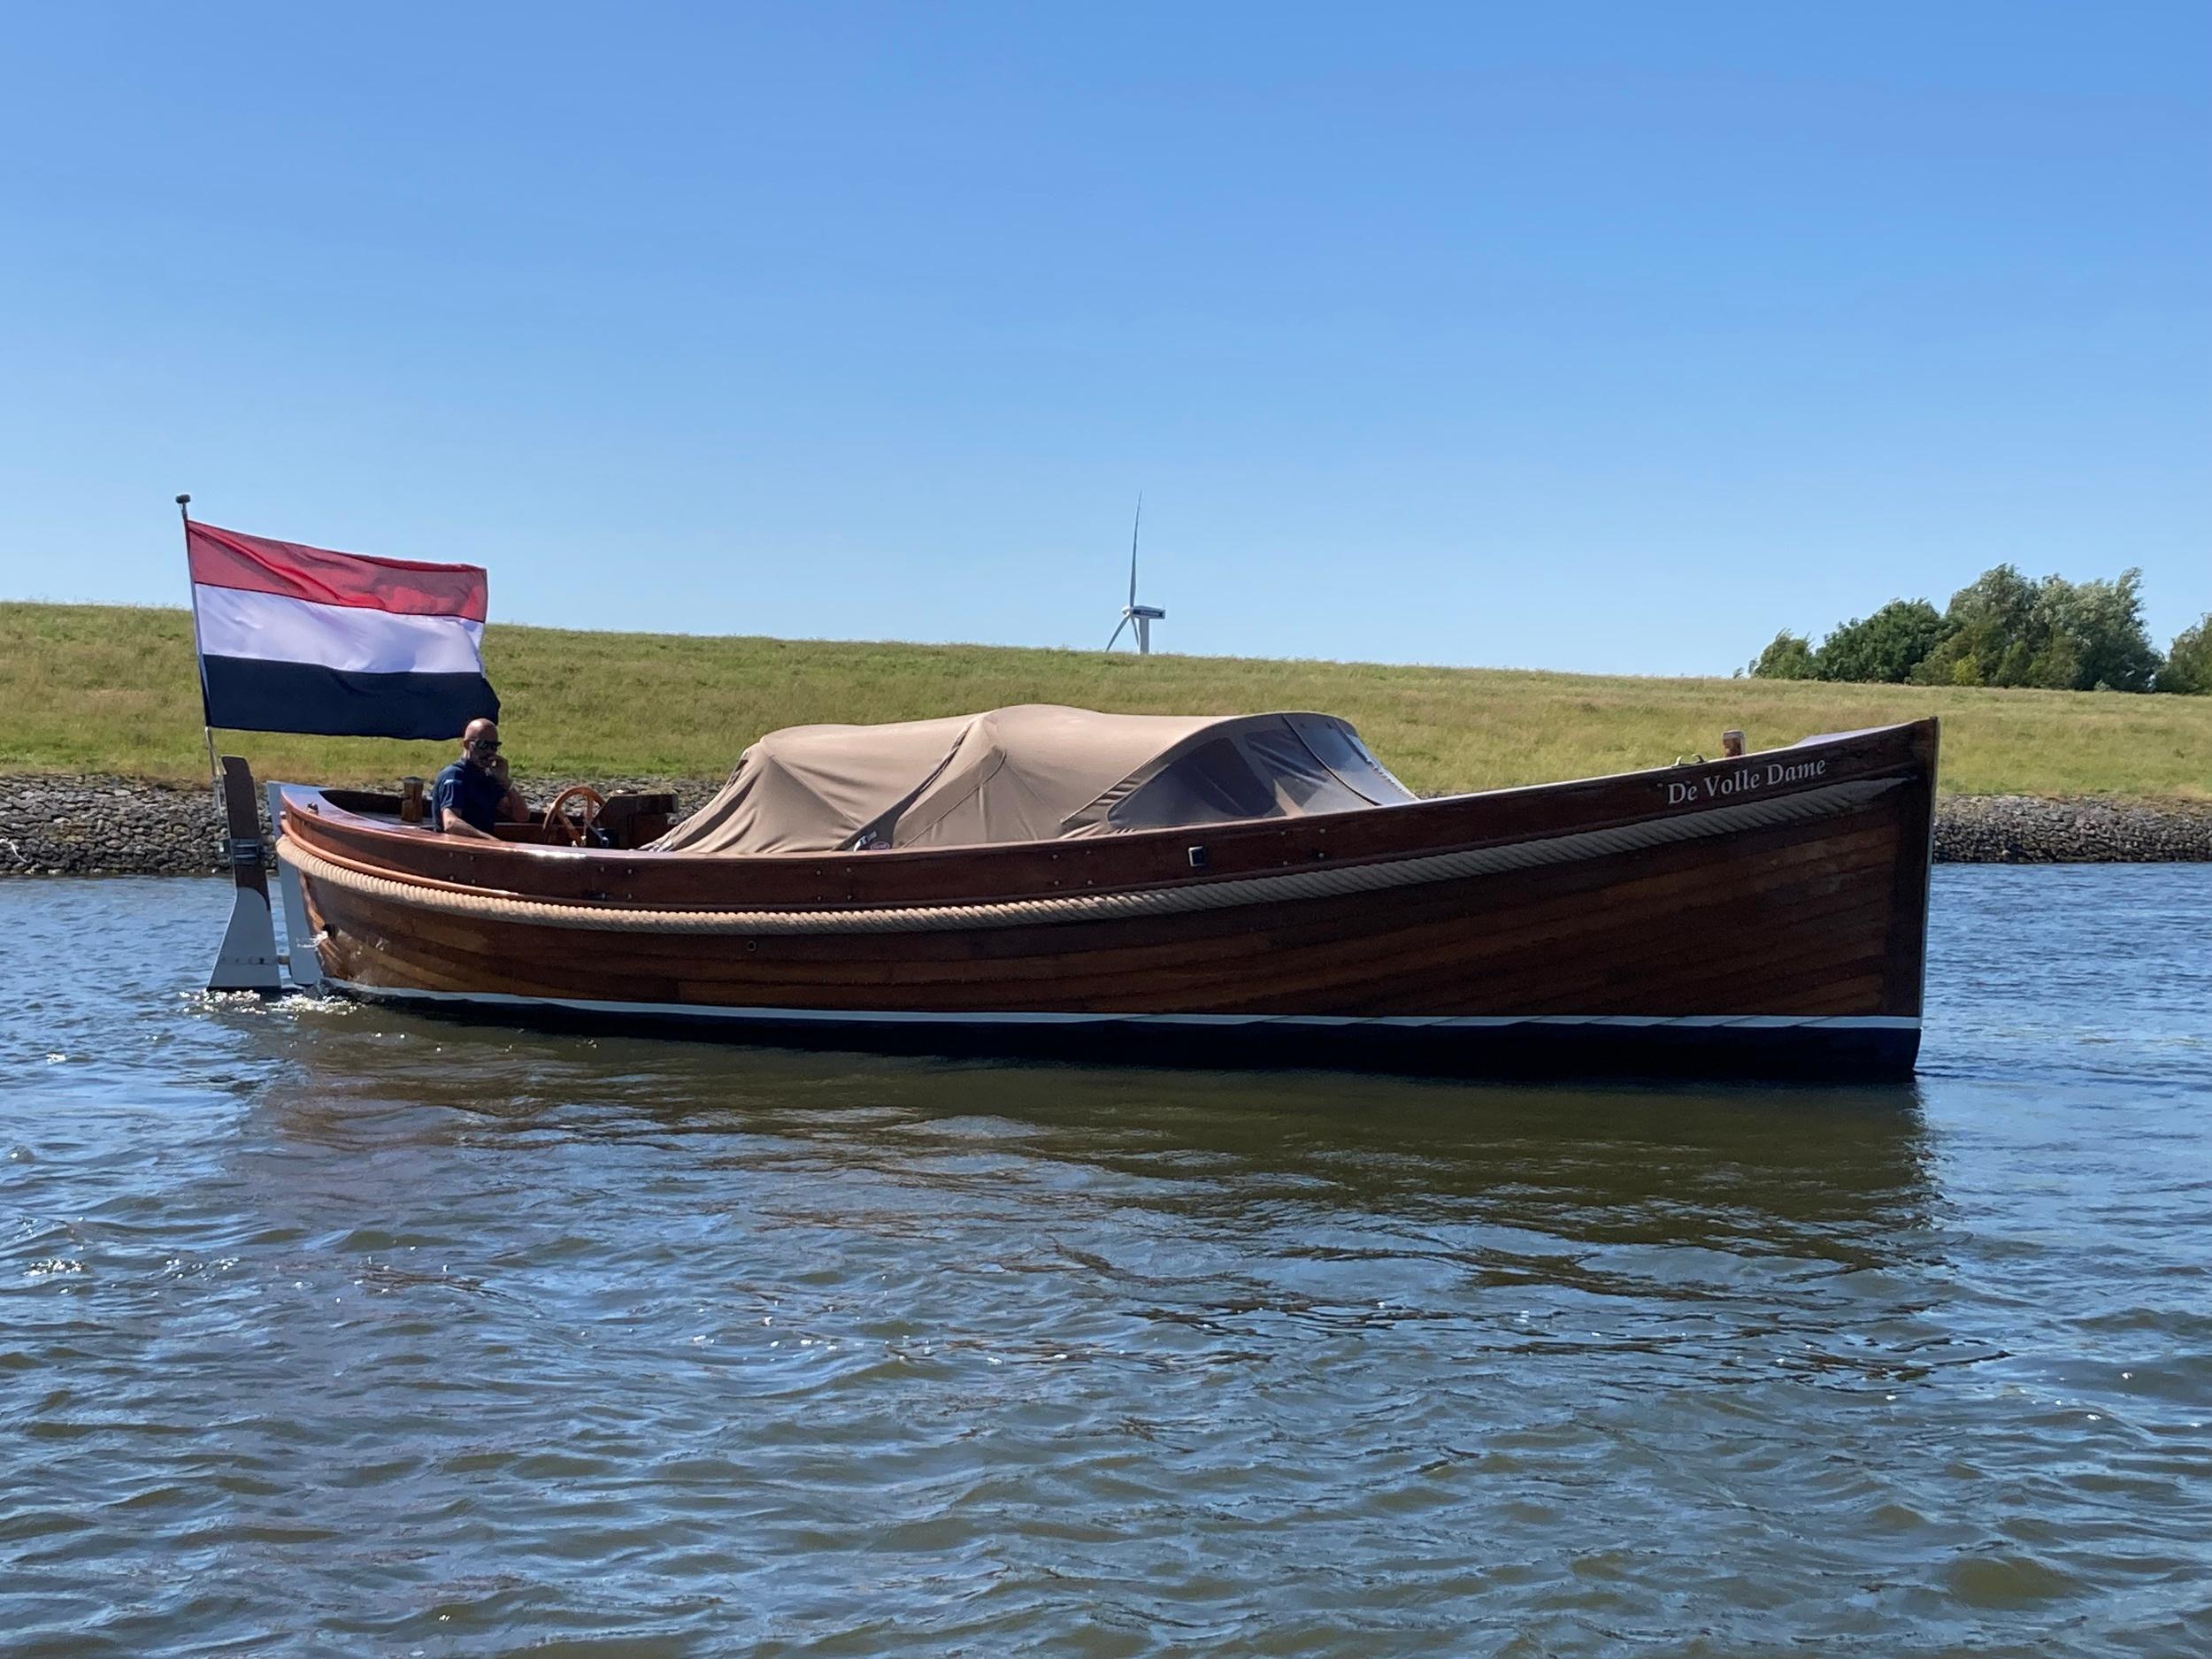 1950 S.I.R. Reddingsboot Sloep